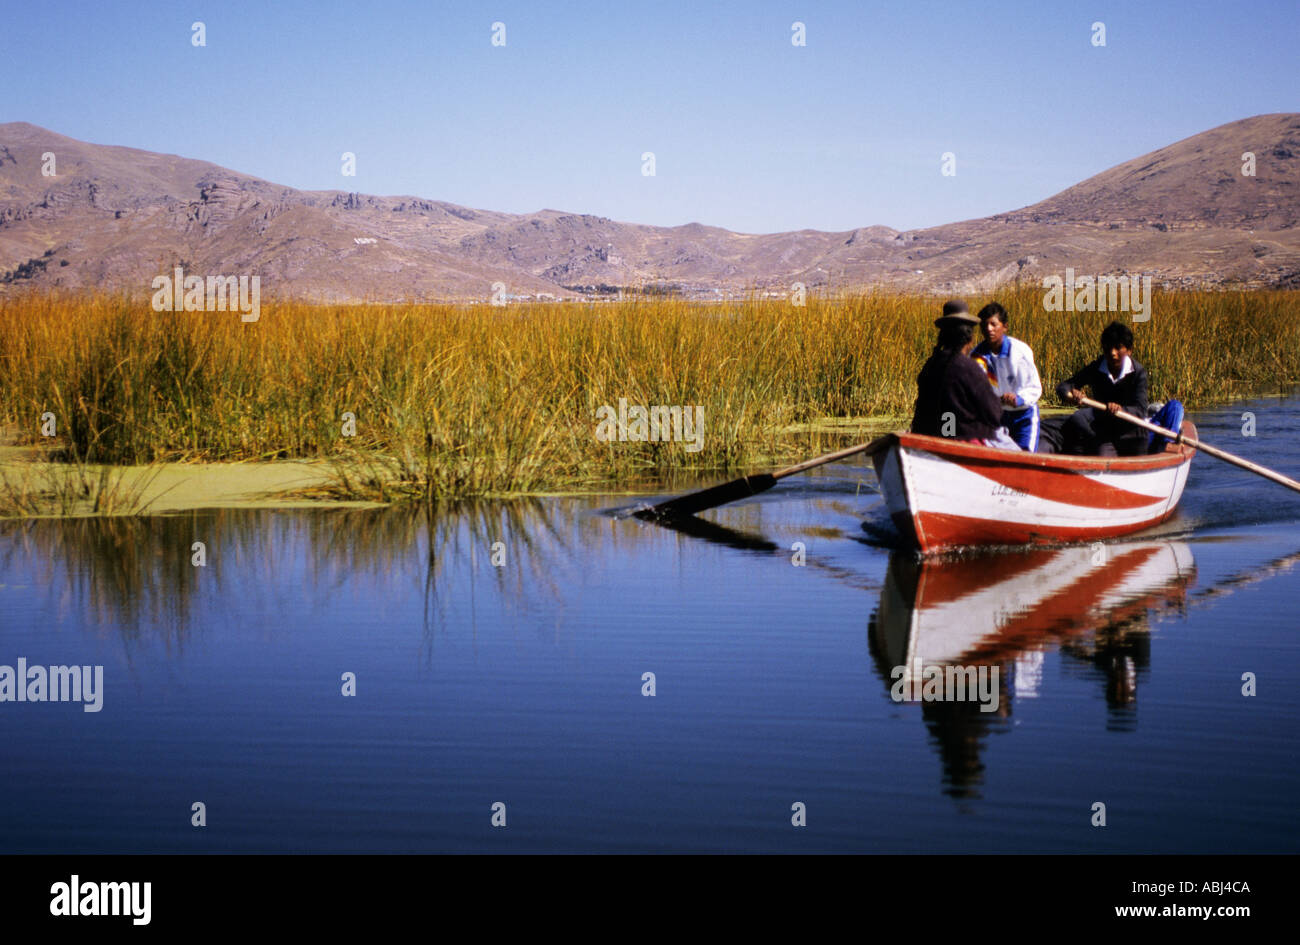 Le lac Titicaca, au Pérou. Deux hommes et une femme dans un bateau rouge et blanc sur le lac. Banque D'Images